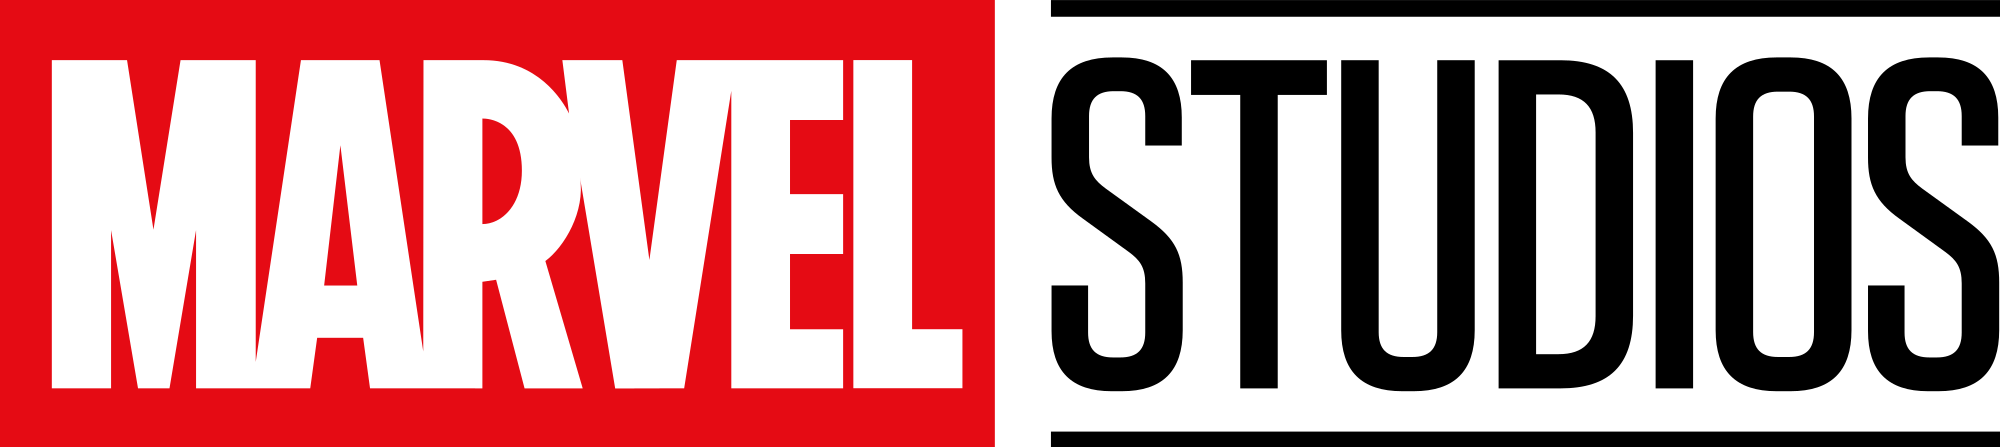 Marvel_Studios_2016_logo.svg.png